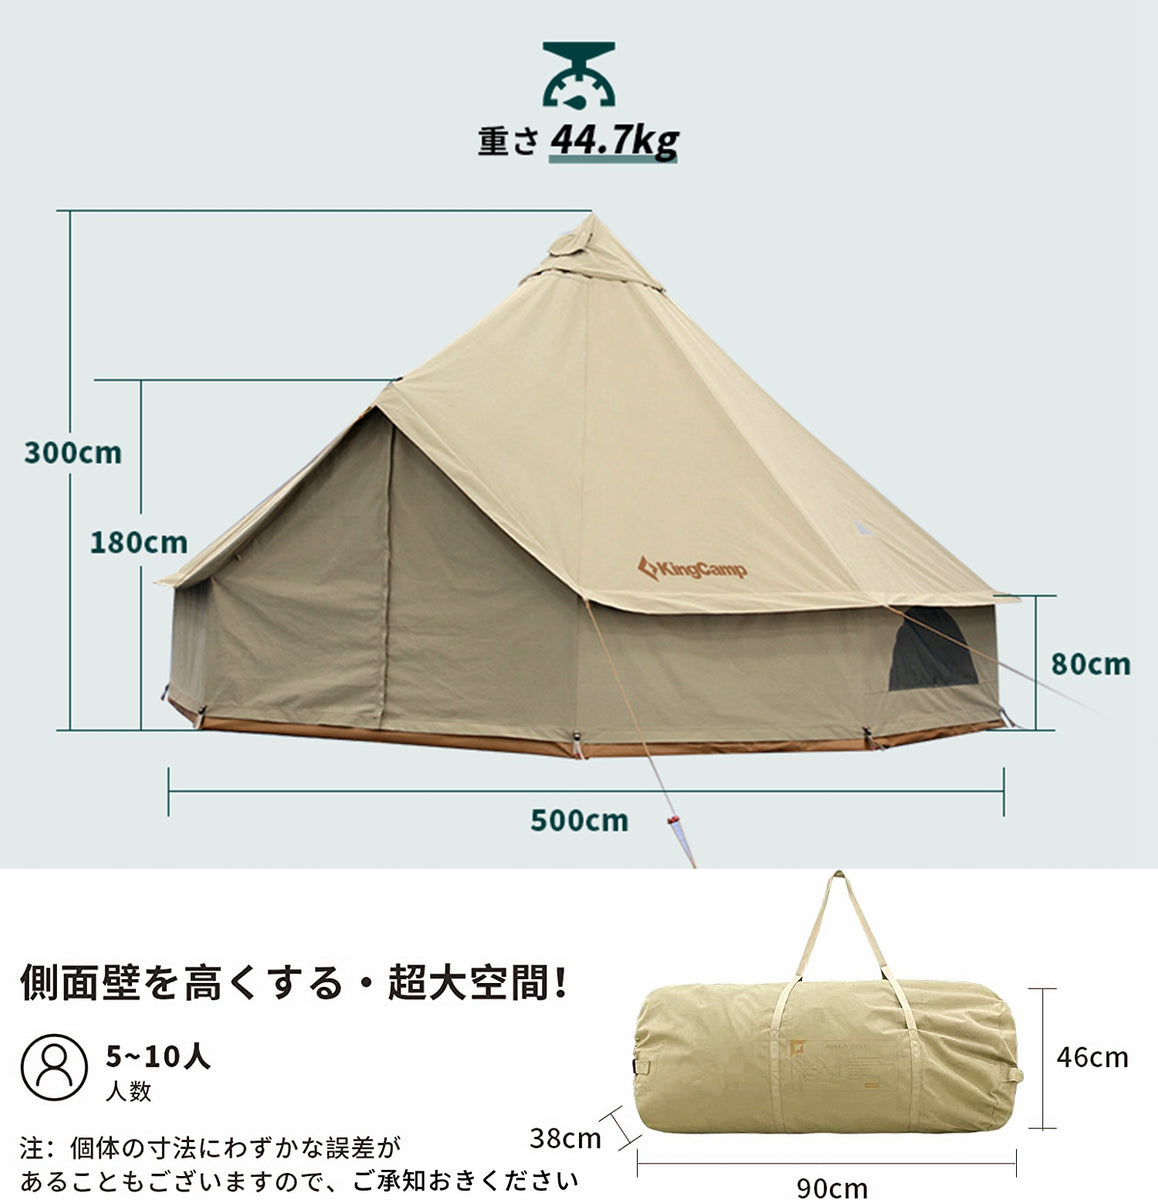 ベルテント TOMOUNT 大型テント - テント・タープ